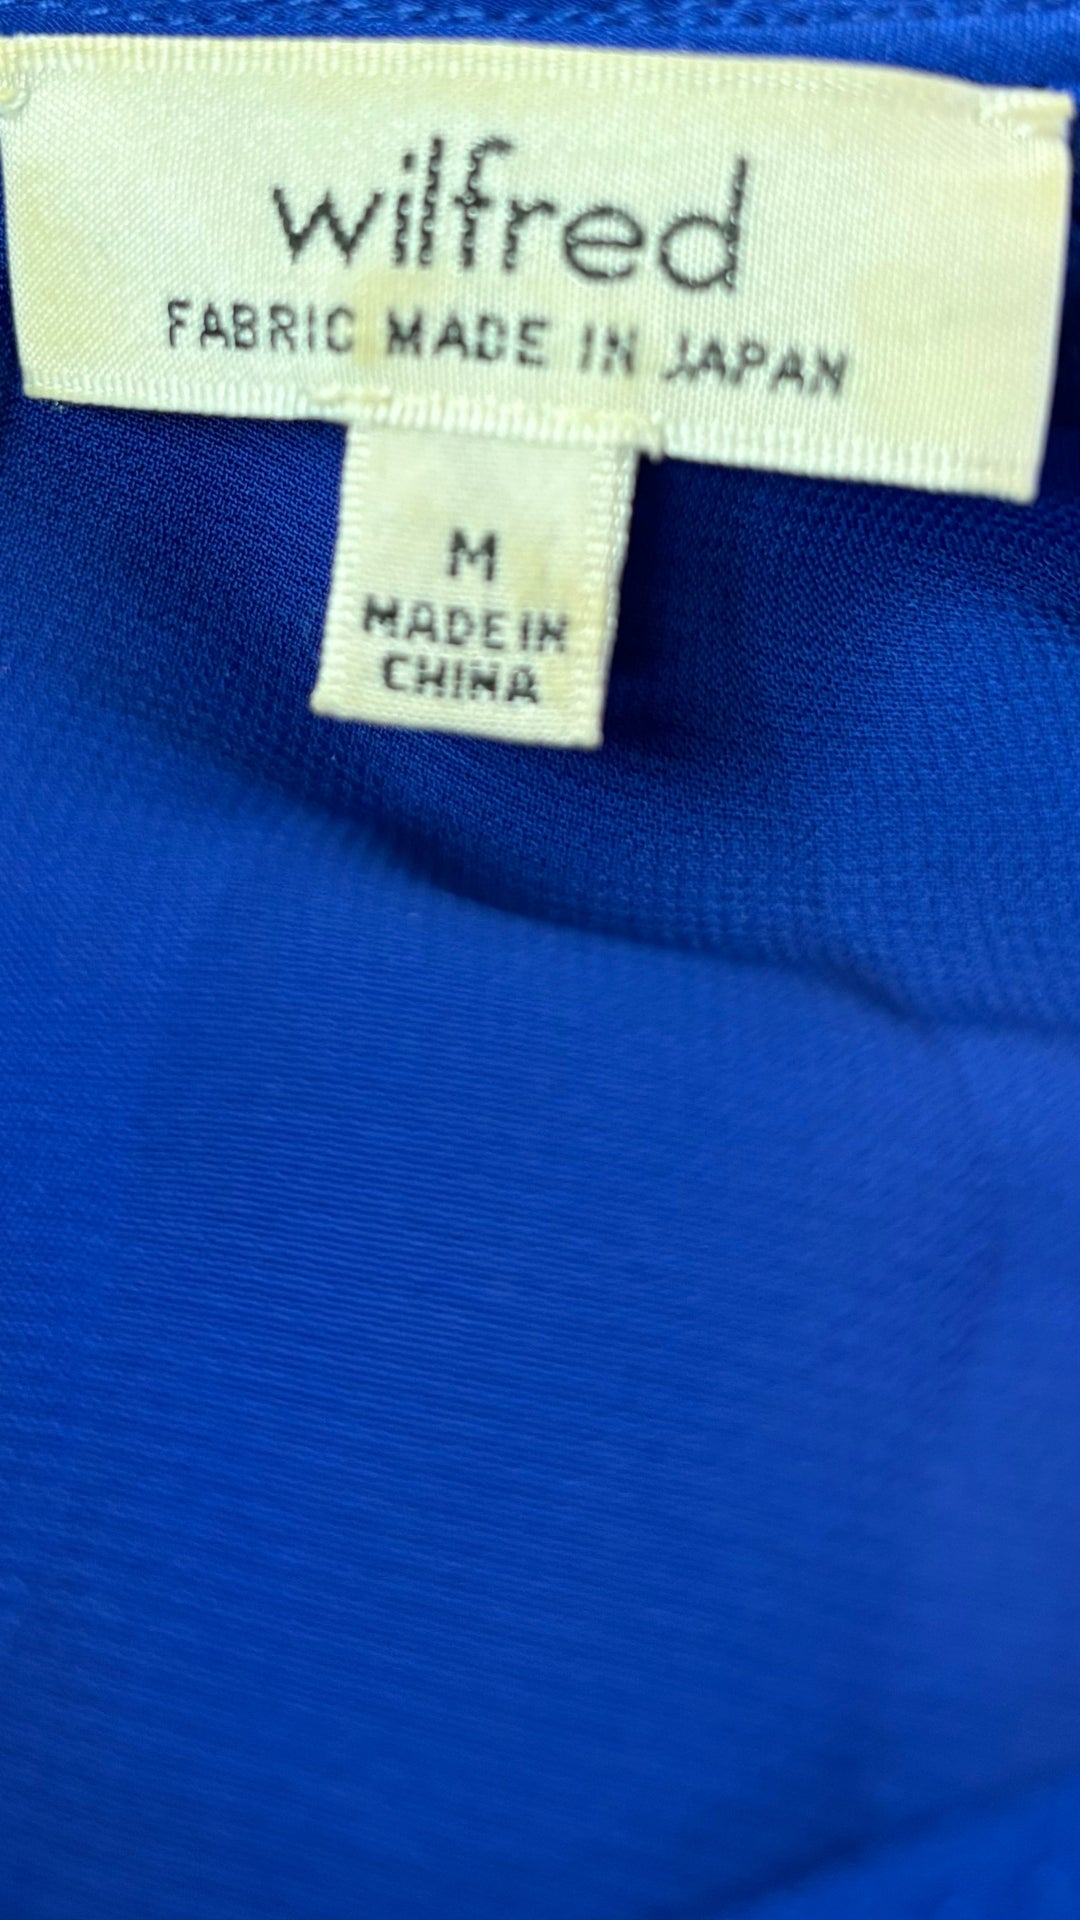 Robe fluide bleu cobalt Wilfred, taille medium. Vue de l'étiquette de marque et taille.